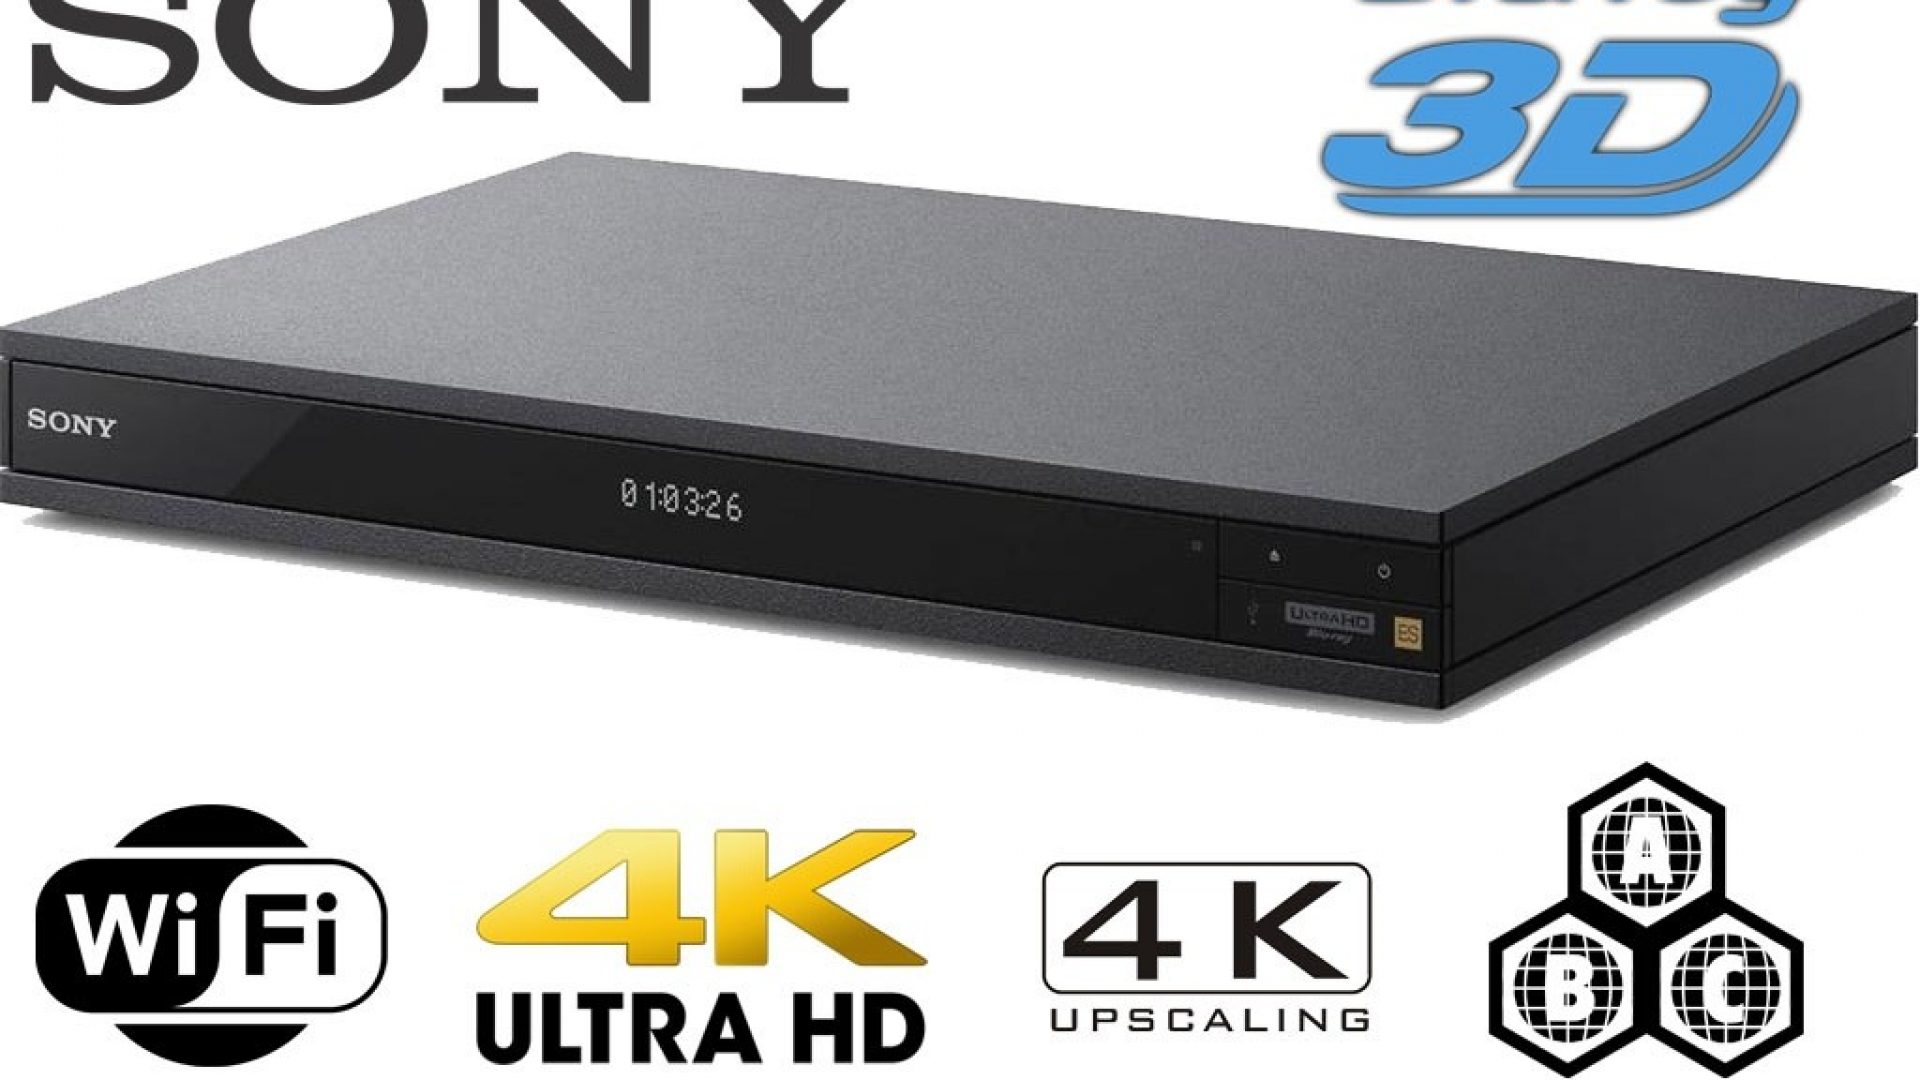 Reproductor Sony UBP-X1100ES está disponible en venta